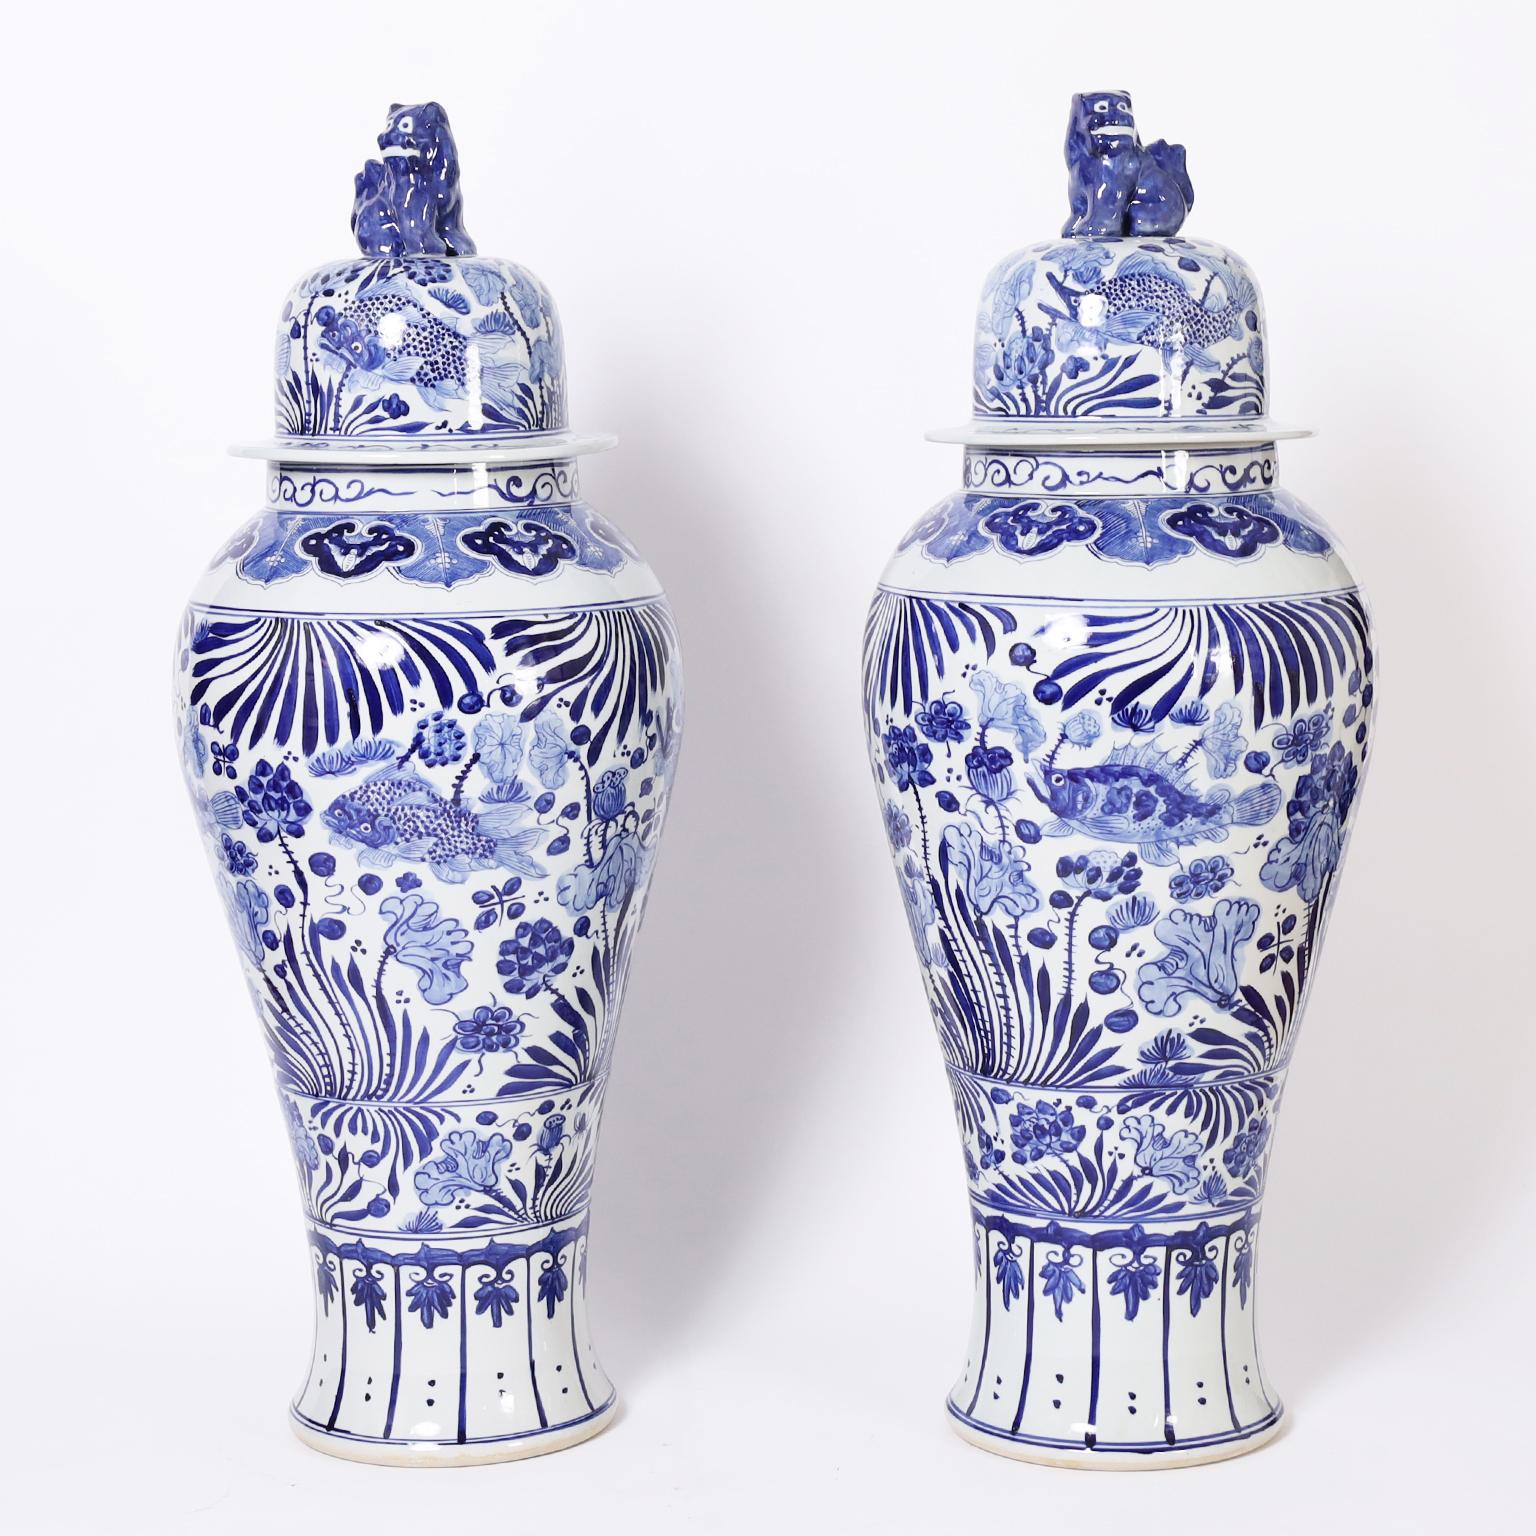 Auffallendes Paar chinesischer blau-weißer Porzellan-Urnen mit Katzen-Deckelgriffen und anspruchsvoller Handdekoration mit aquatischer Fauna und Flora, die einen seltenen Hauch von Launenhaftigkeit hat. 